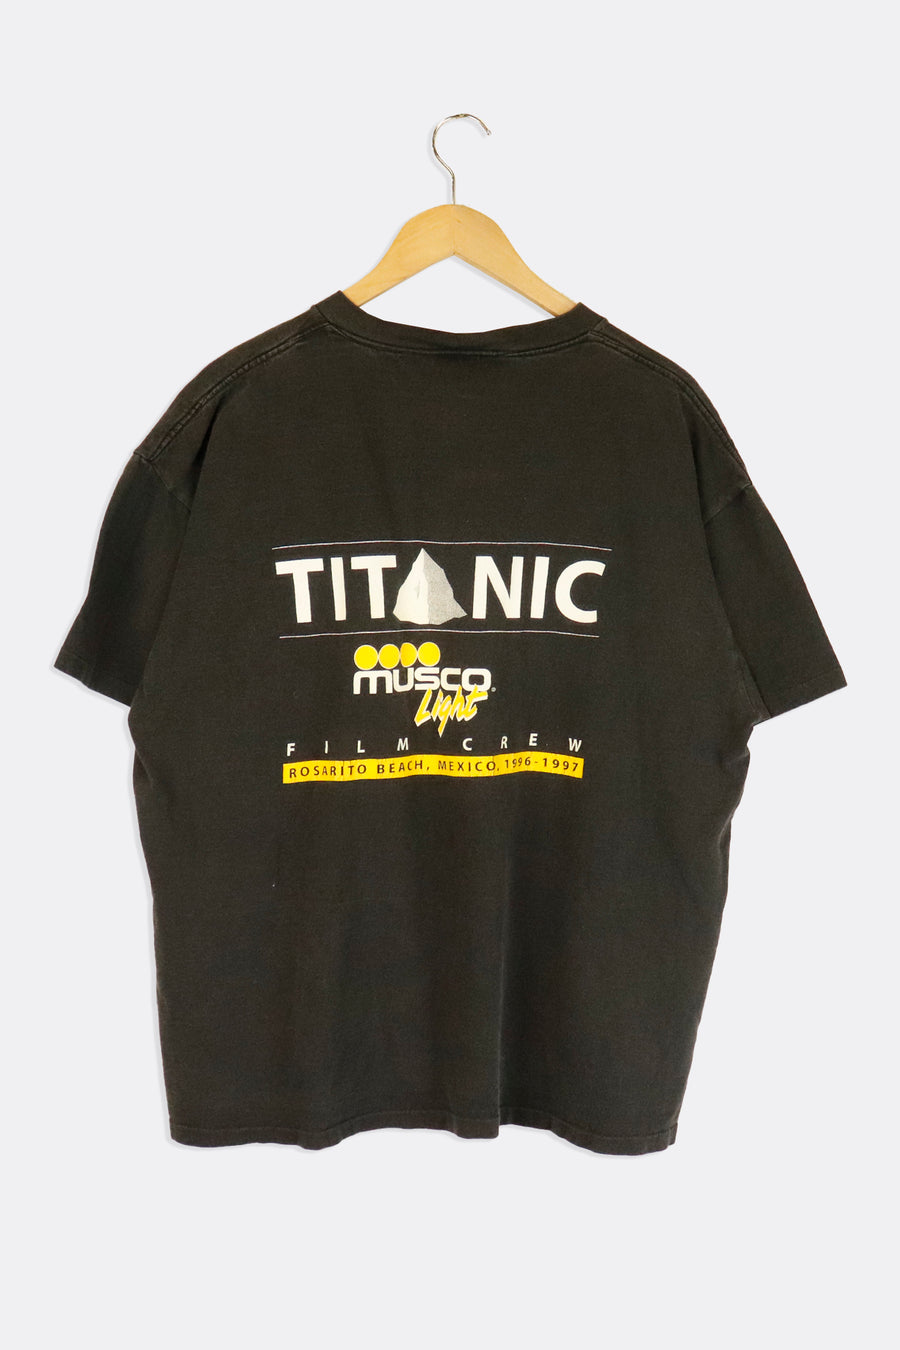 Vintage 1997 Titanic Film Crew Vinyl T Shirt Sz XL